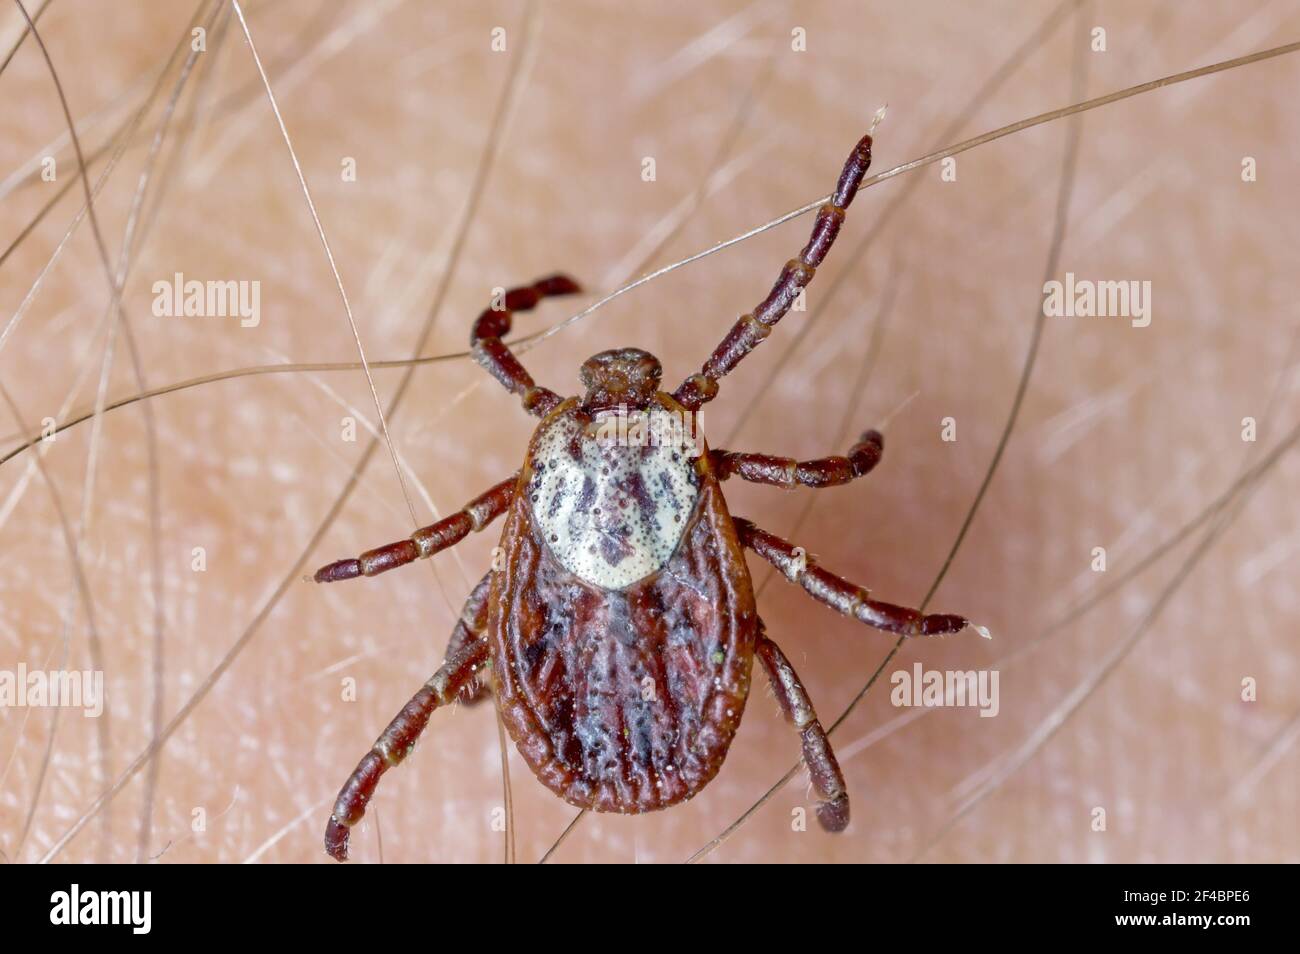 Lyme-Borreliose-Träger Ixodes Zecken Dermacentor marginatus auf der menschlichen Haut. Stockfoto